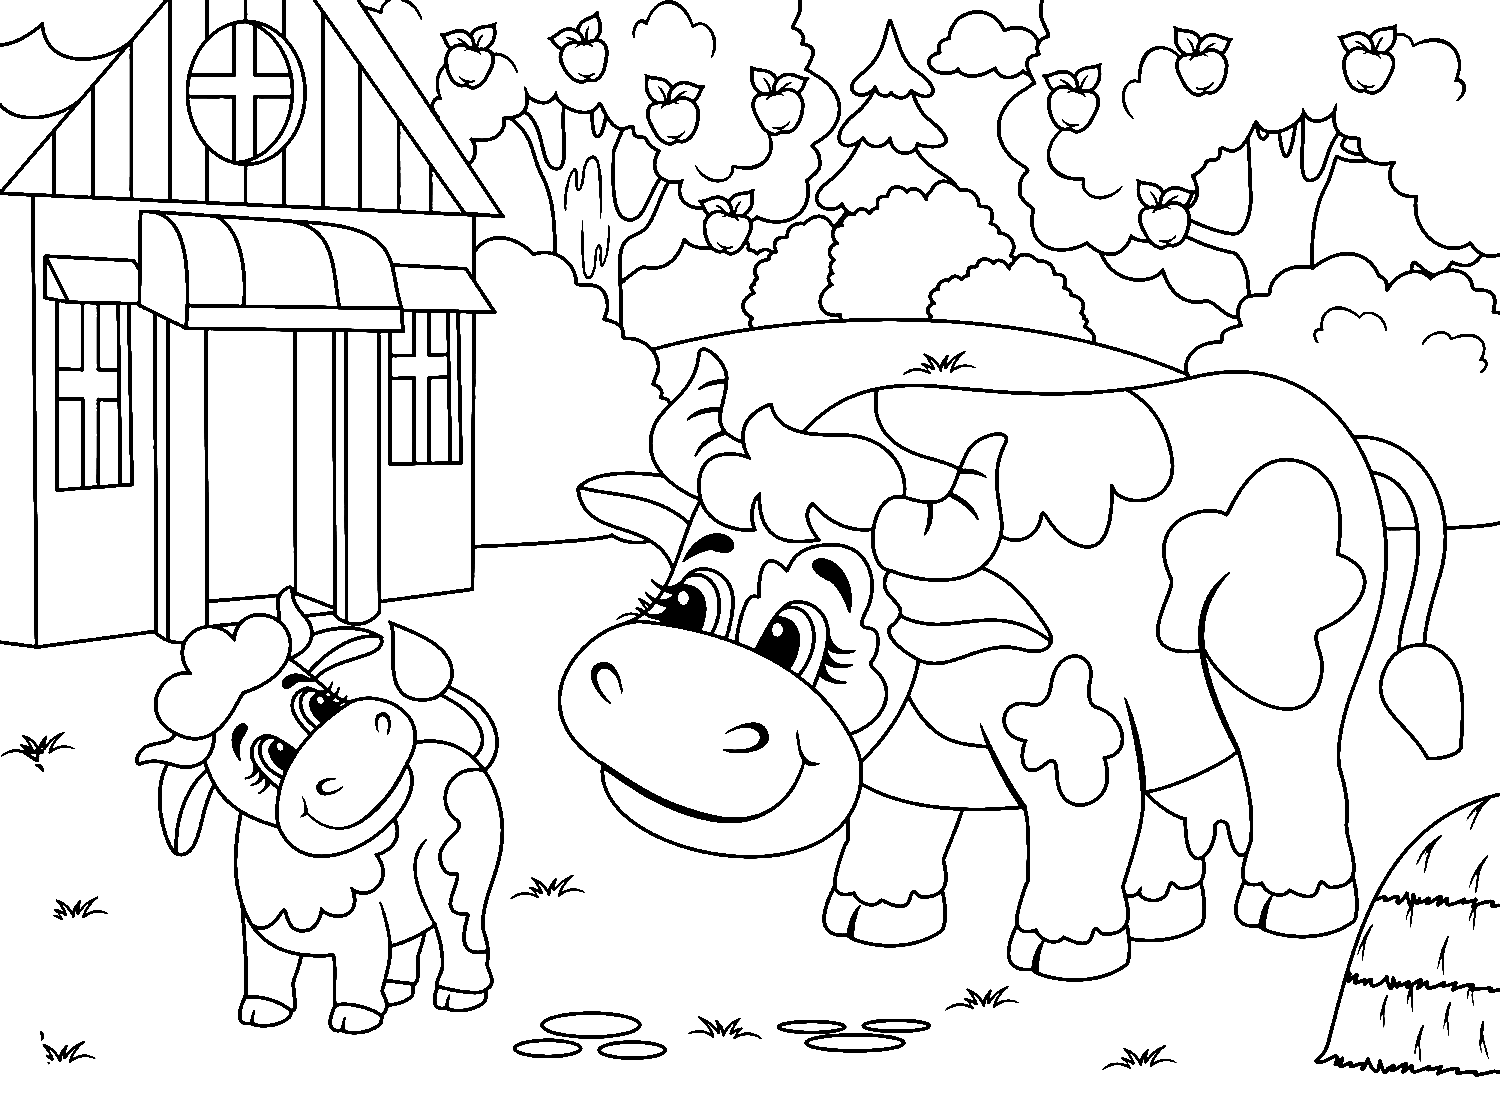 Kuh und Kalb stehen vor dem Haus vom Kalb